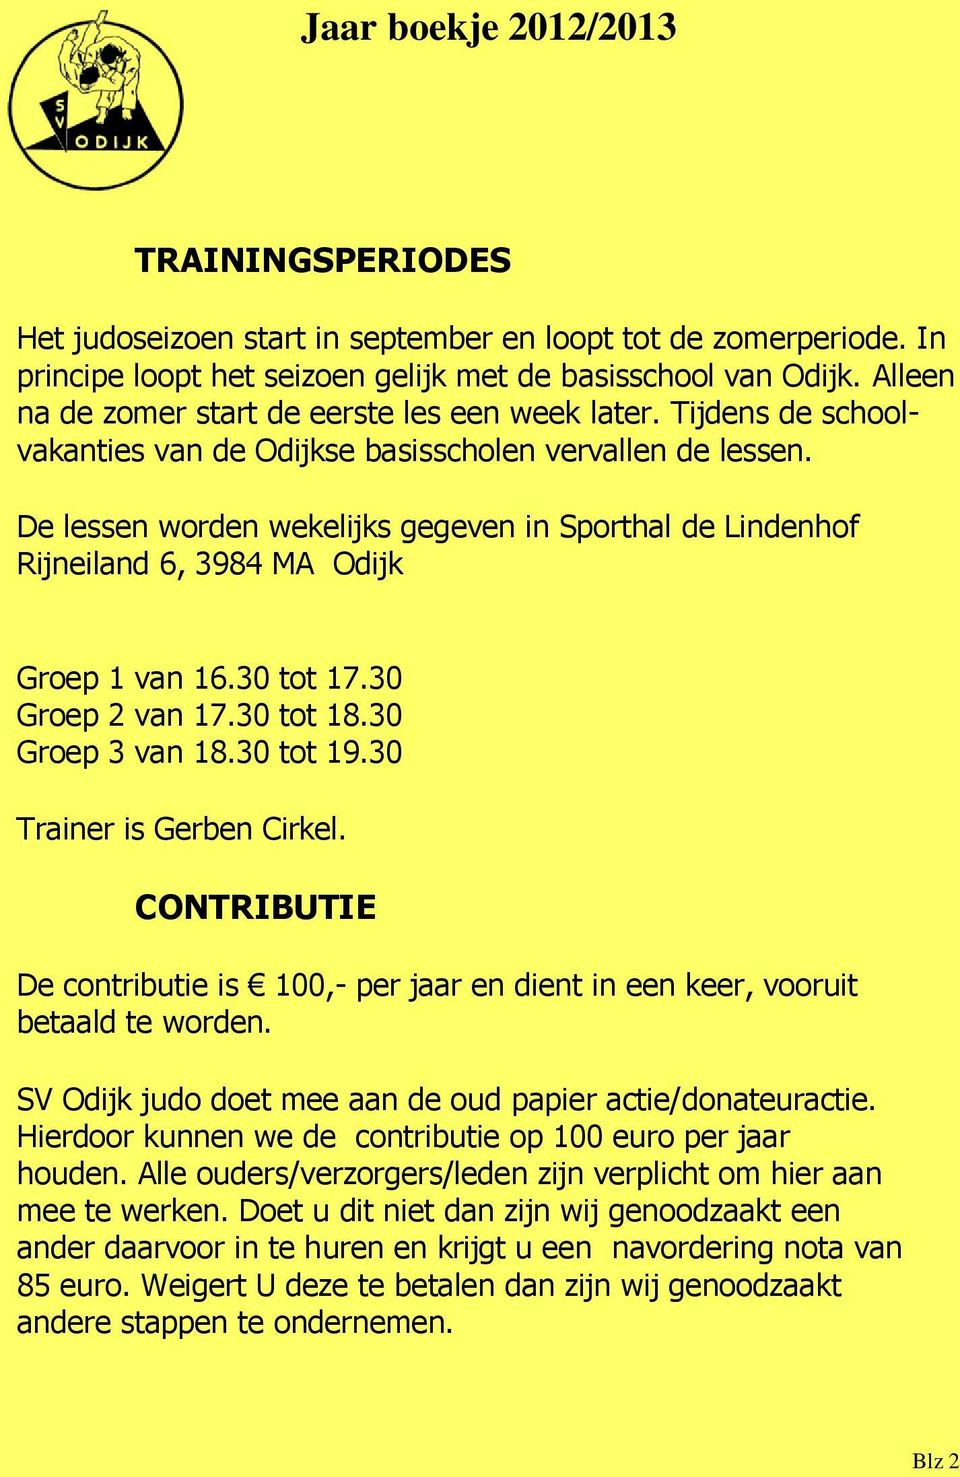 De lessen worden wekelijks gegeven in Sporthal de Lindenhof Rijneiland 6, 3984 MA Odijk Groep 1 van 16.30 tot 17.30 Groep 2 van 17.30 tot 18.30 Groep 3 van 18.30 tot 19.30 Trainer is Gerben Cirkel.